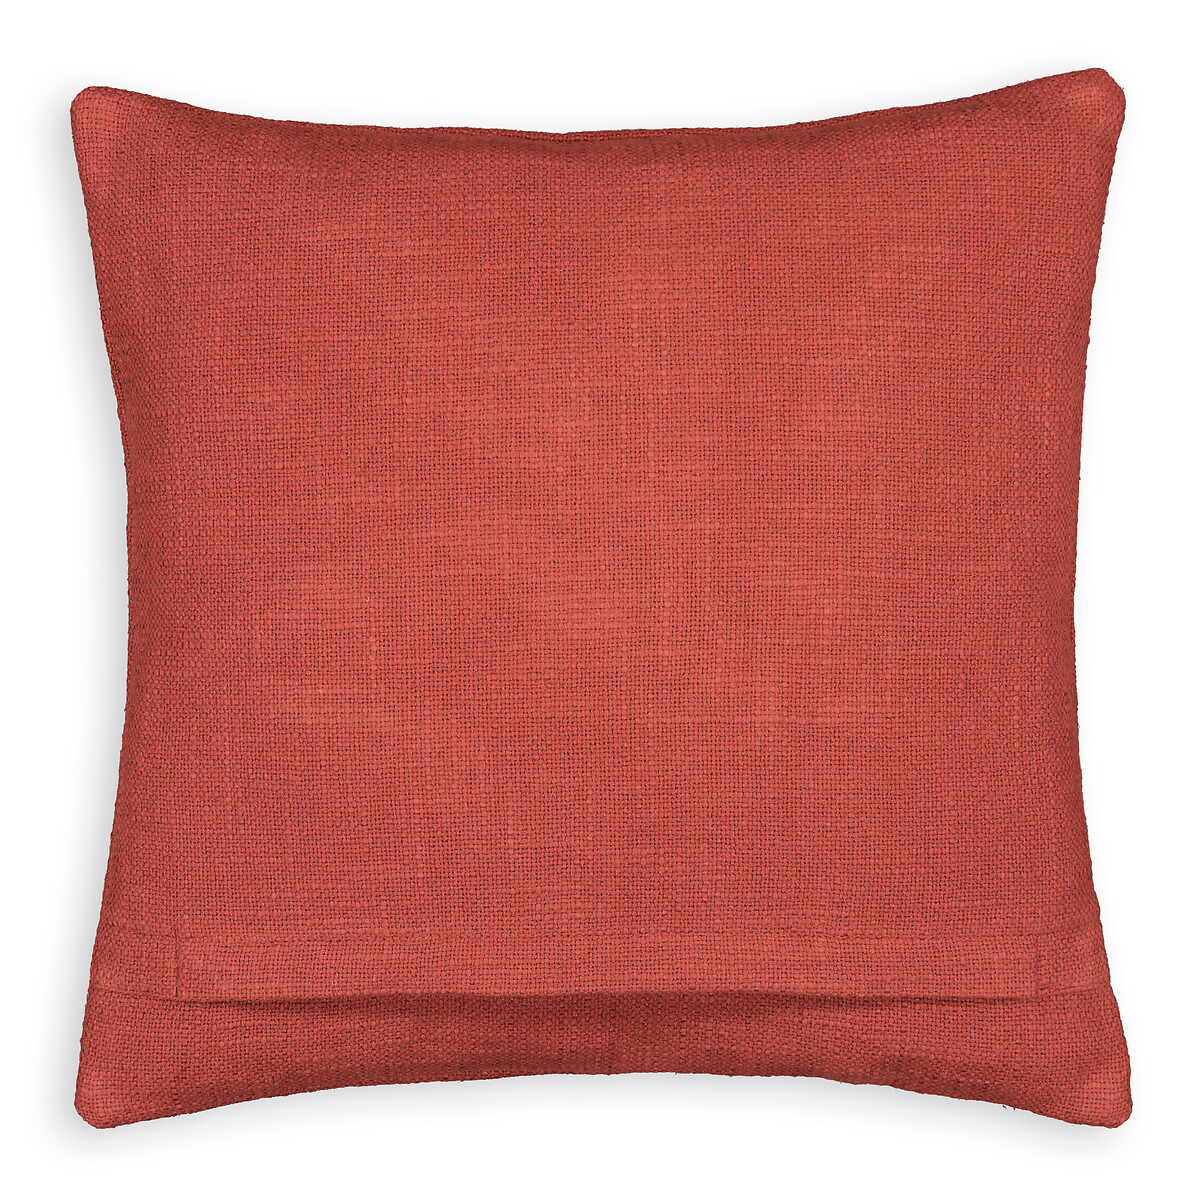 Чехол На подушку из хлопка с вышивкой 40 x 40 см Ulloma 40 x 40 см красный LaRedoute, размер 40 x 40 см - фото 2